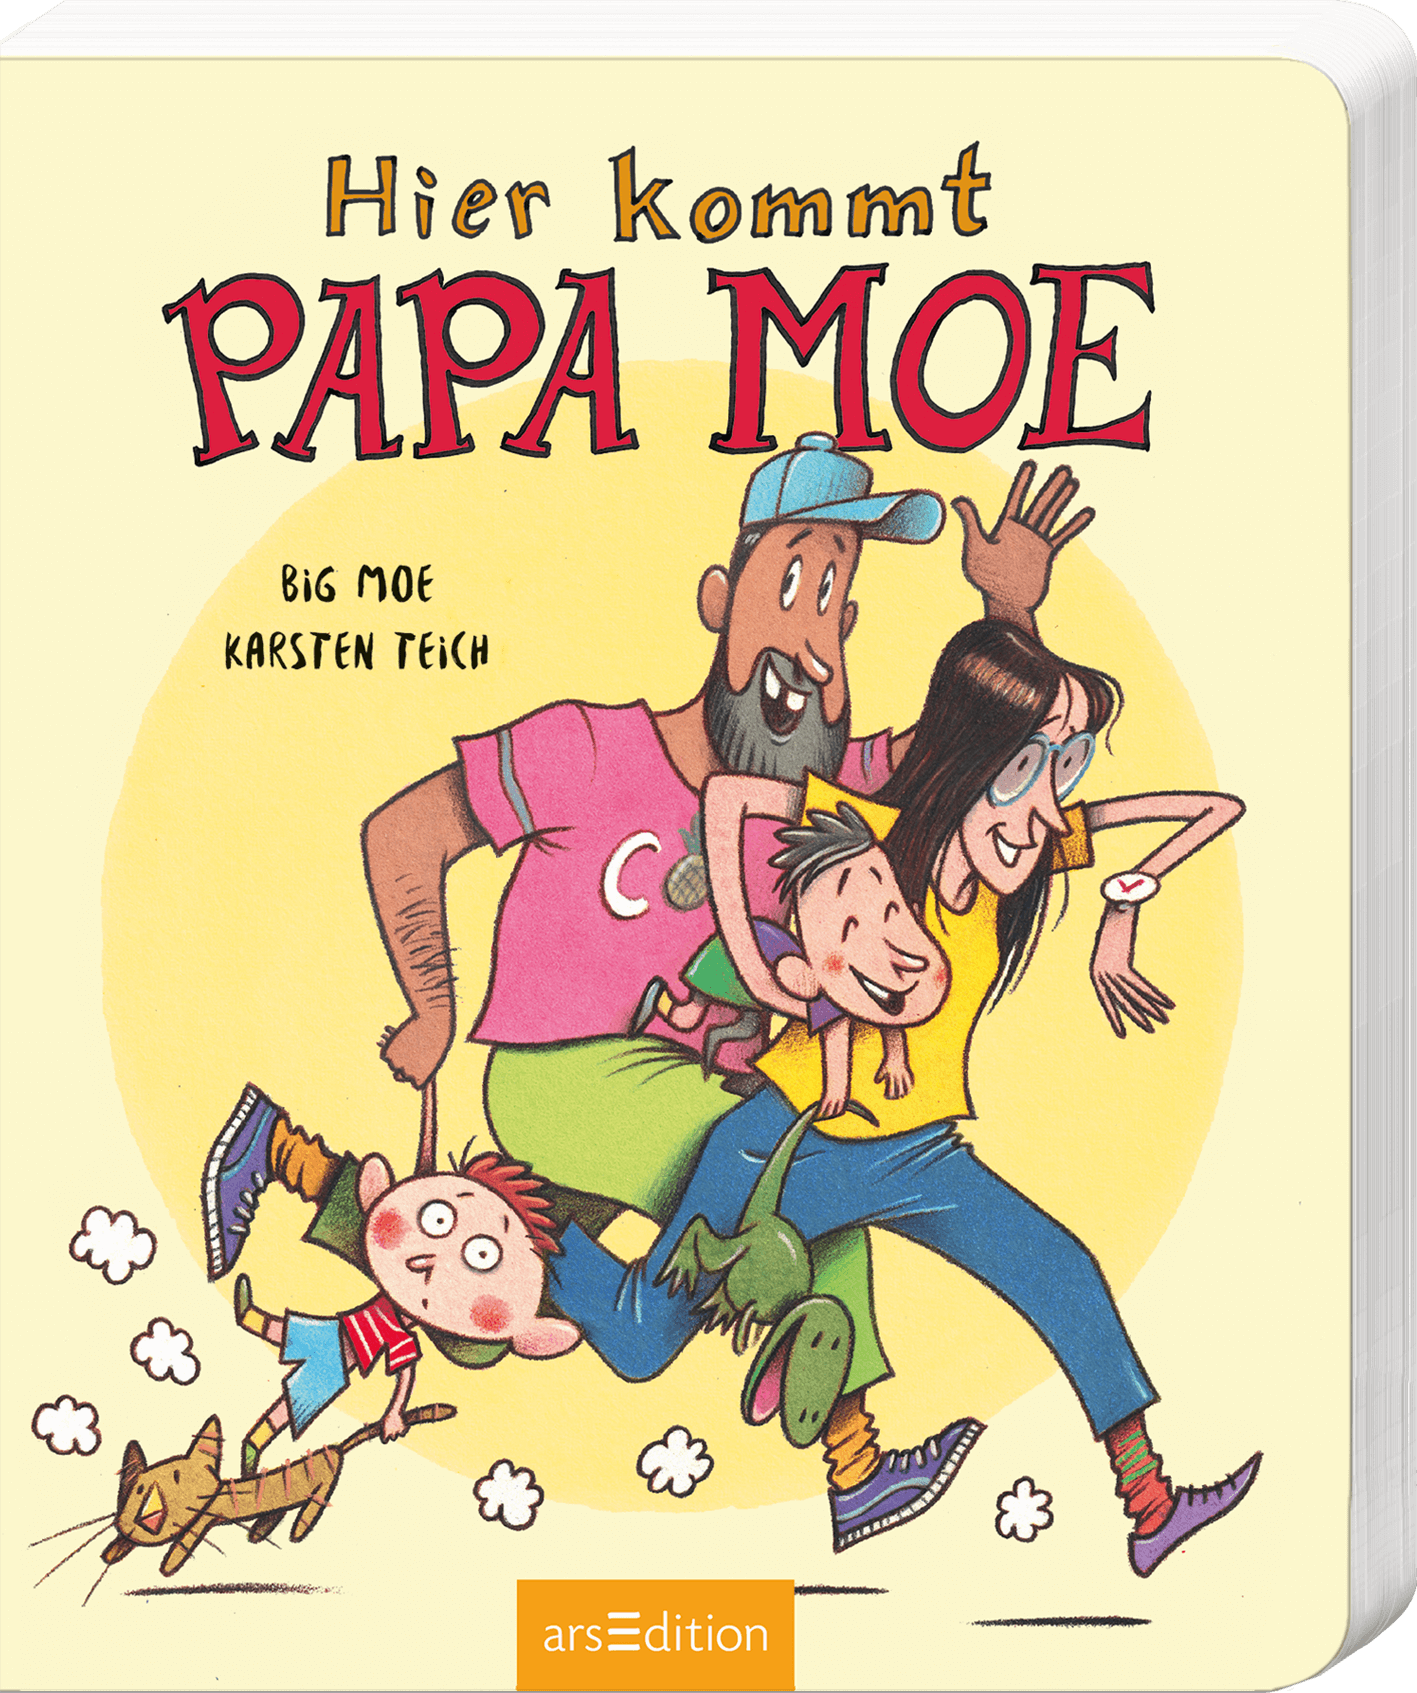 Händlermaterial zu "Hier kommt Papa Moe"